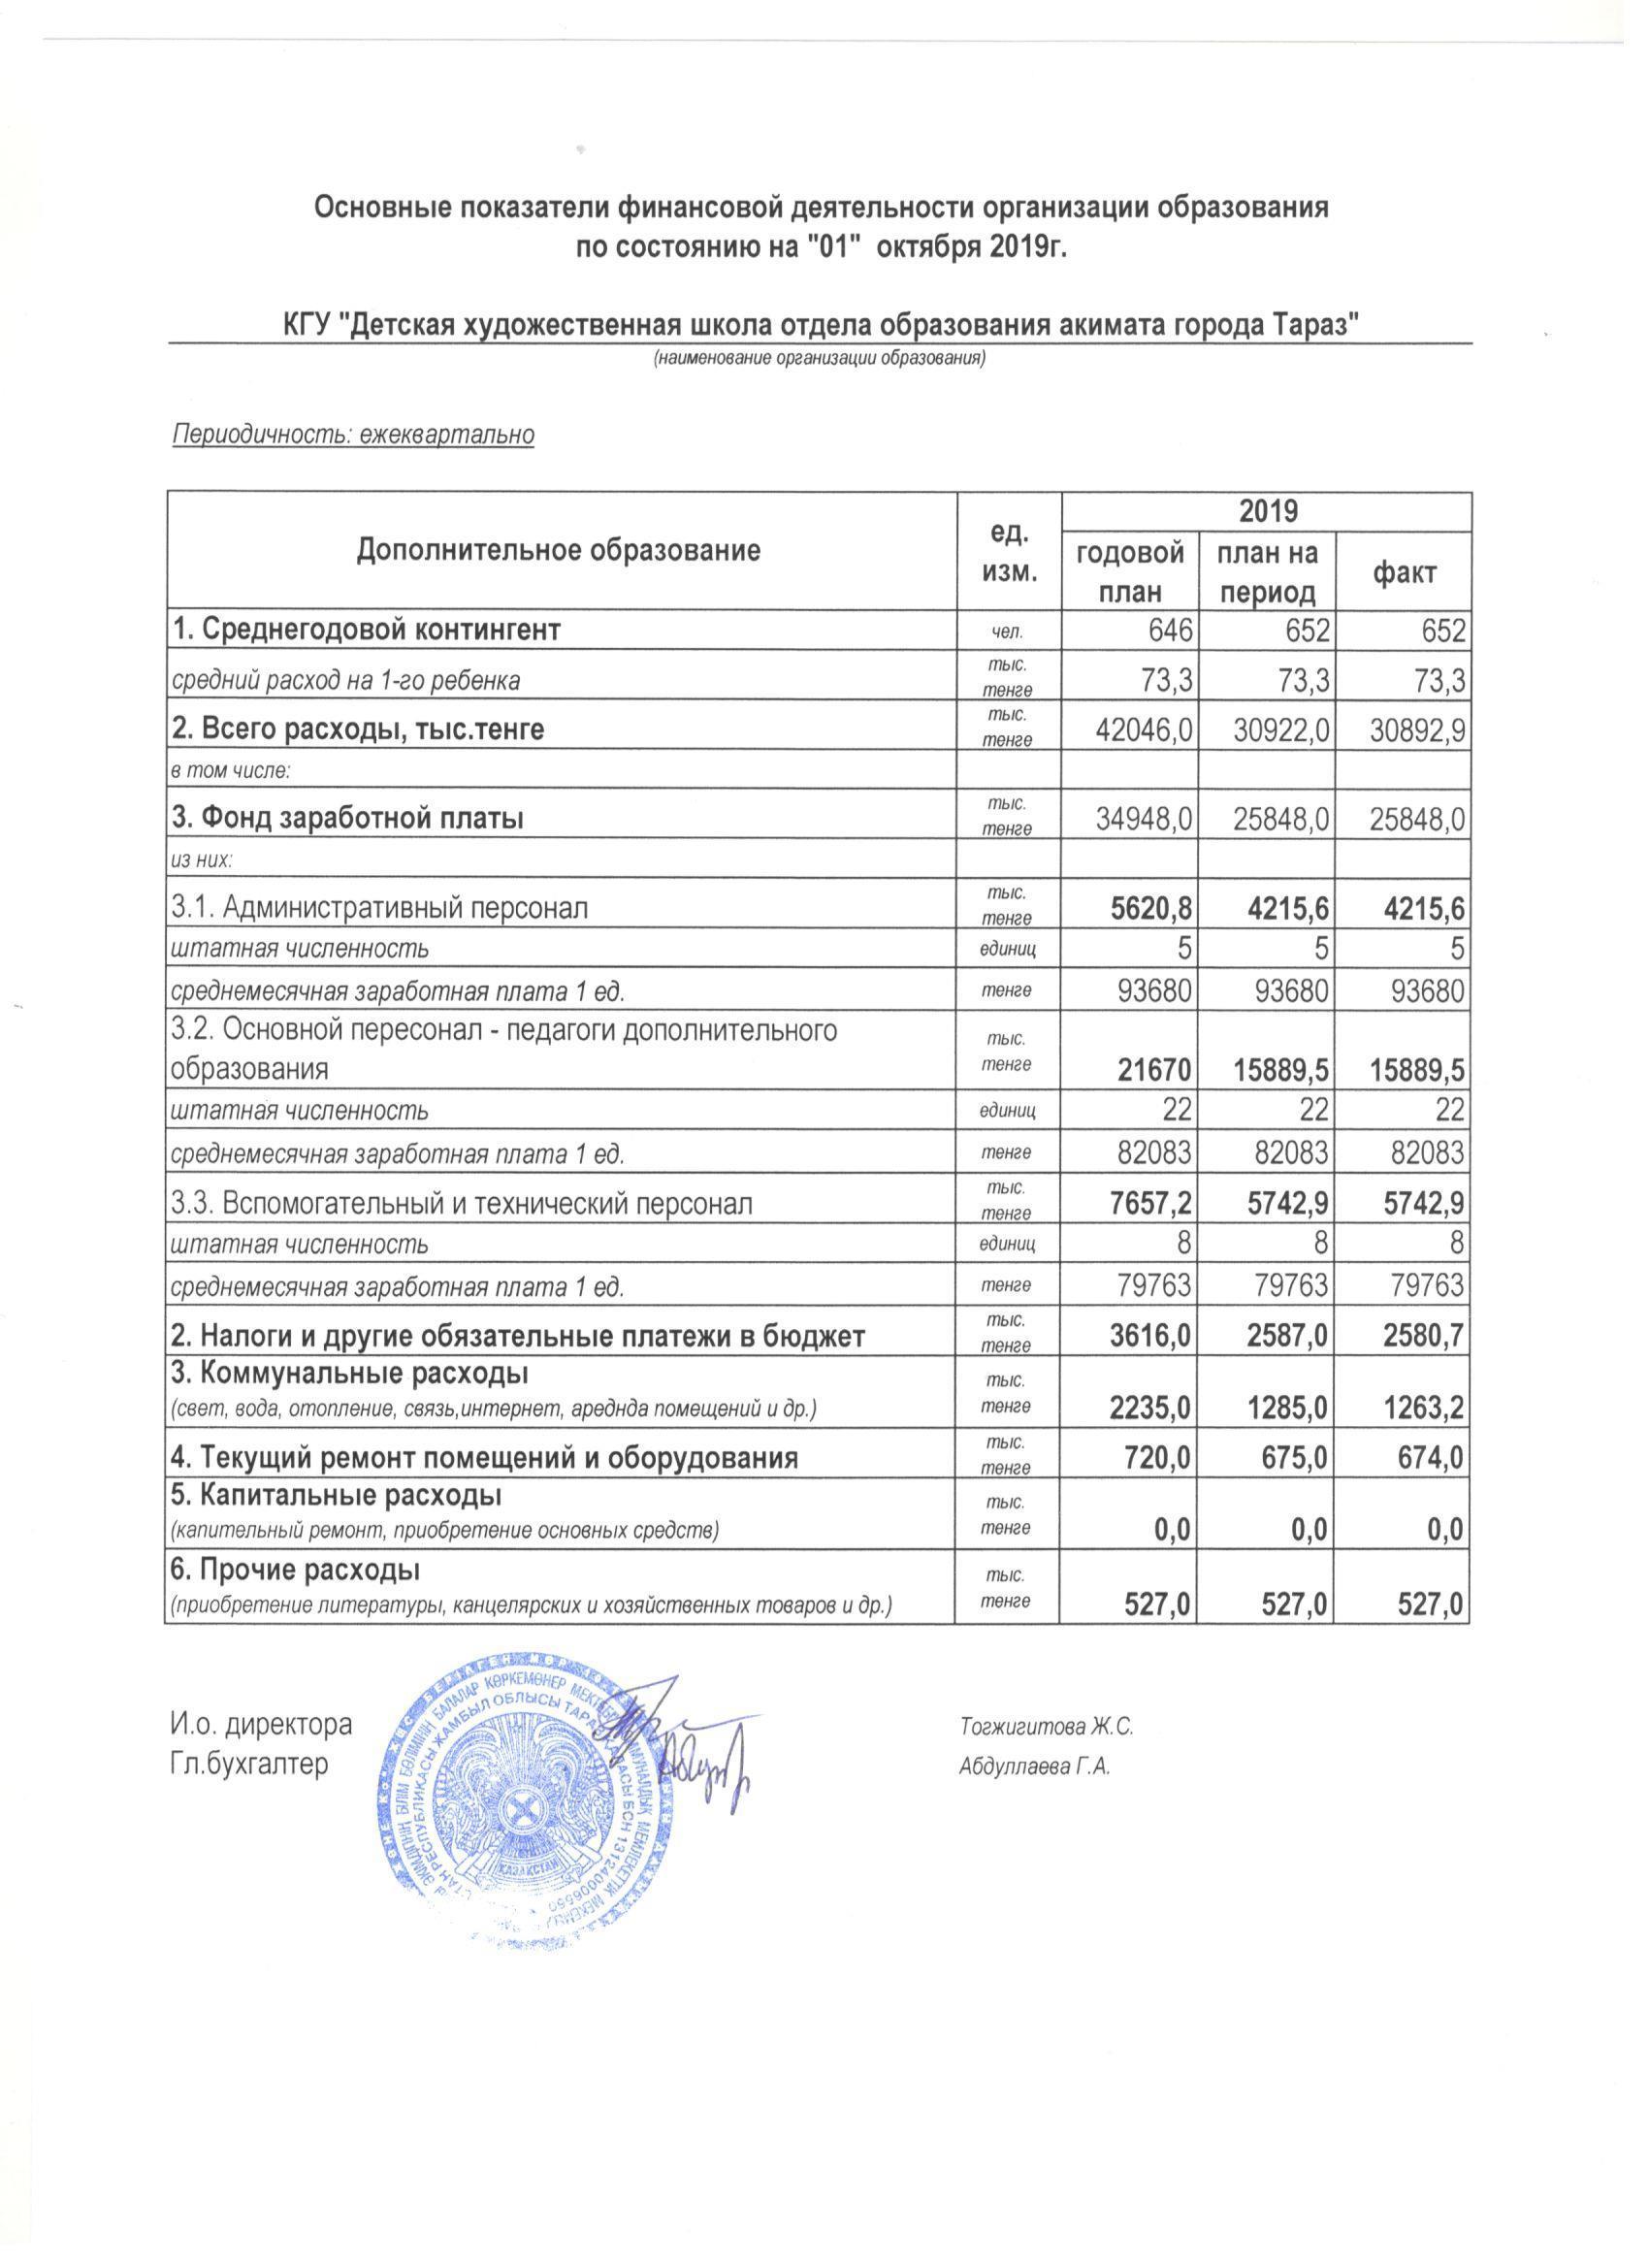 Основные показатели финансовой деятельности на 01.10.2019